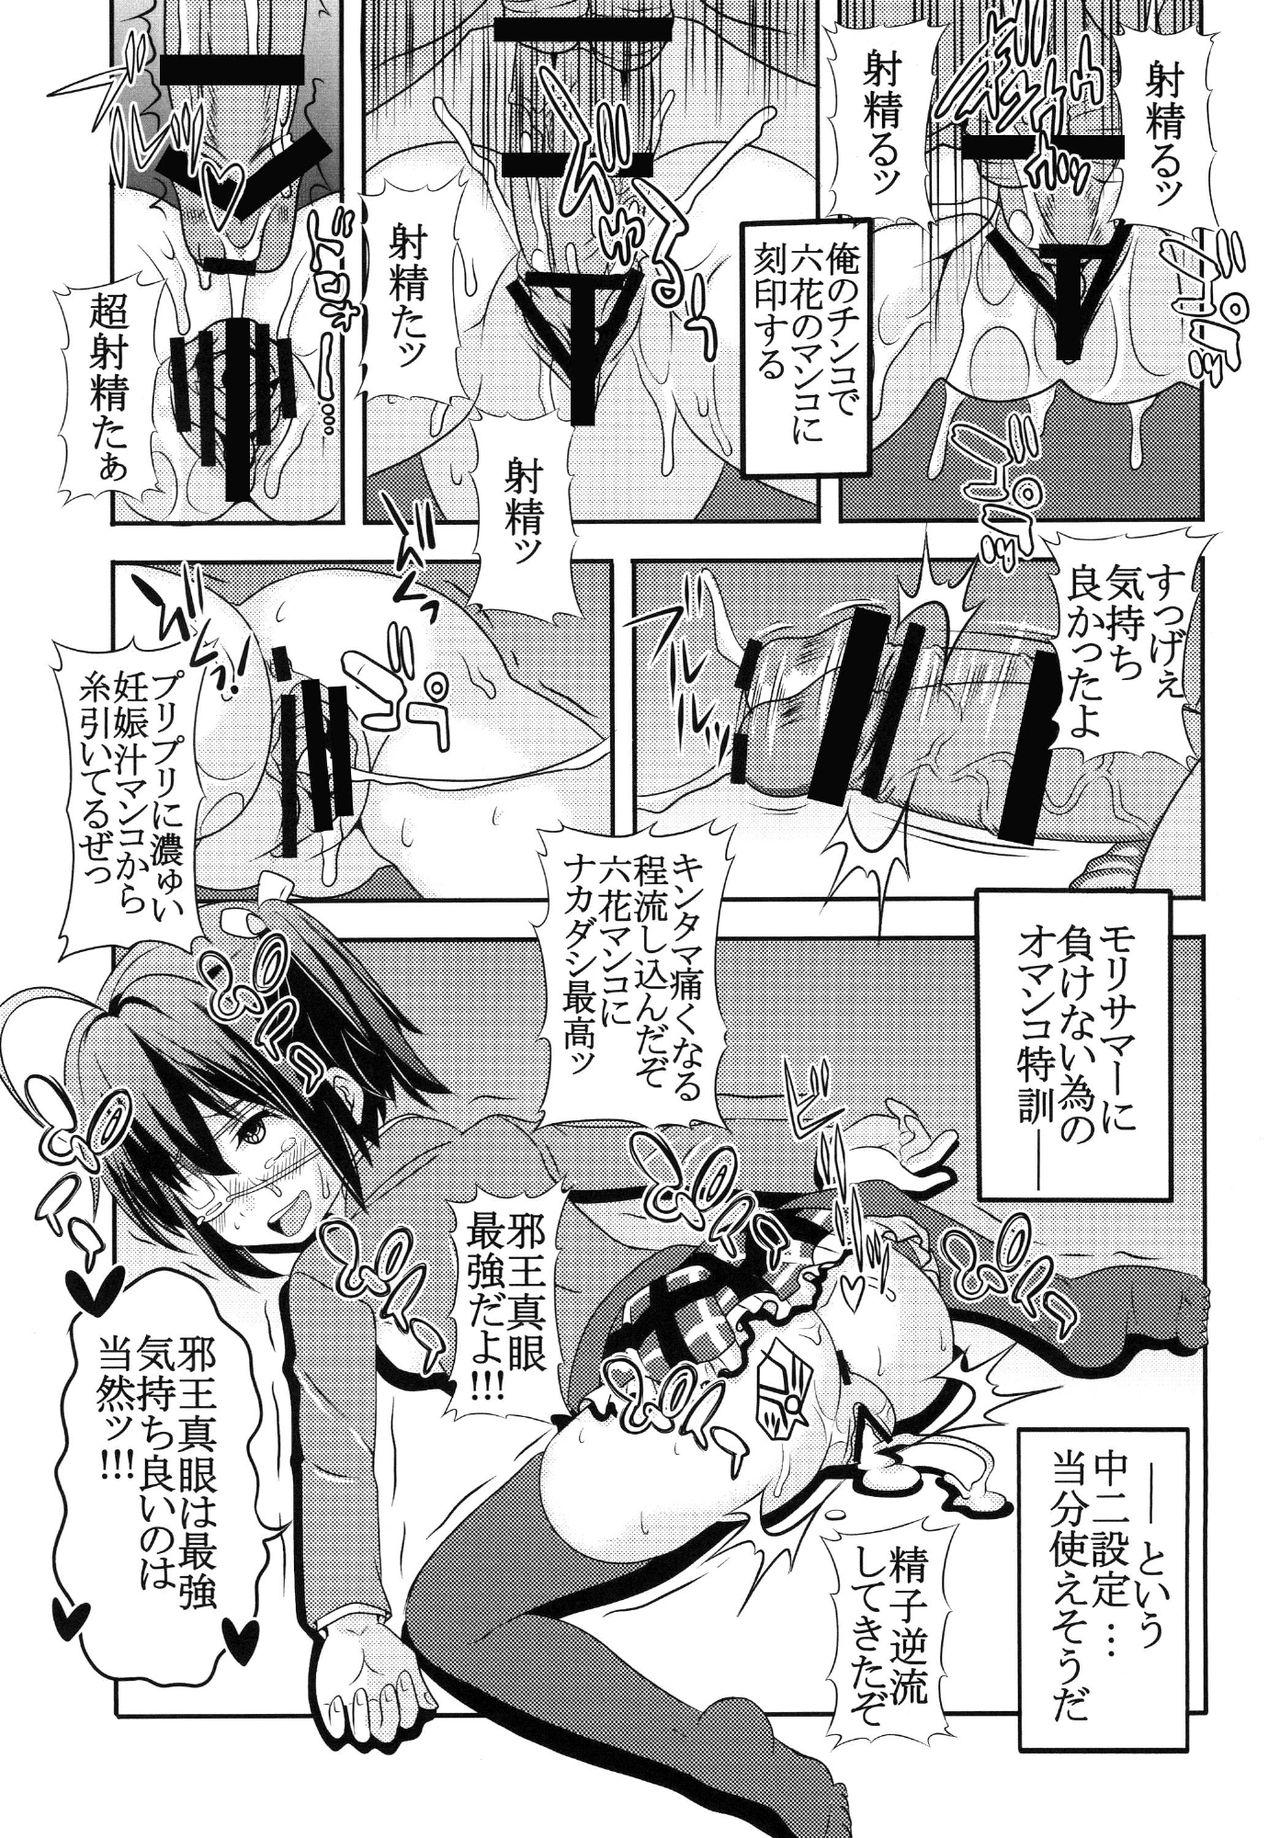 Analfucking Dekomori Muichaimashita - Chuunibyou demo koi ga shitai Uncensored - Page 11